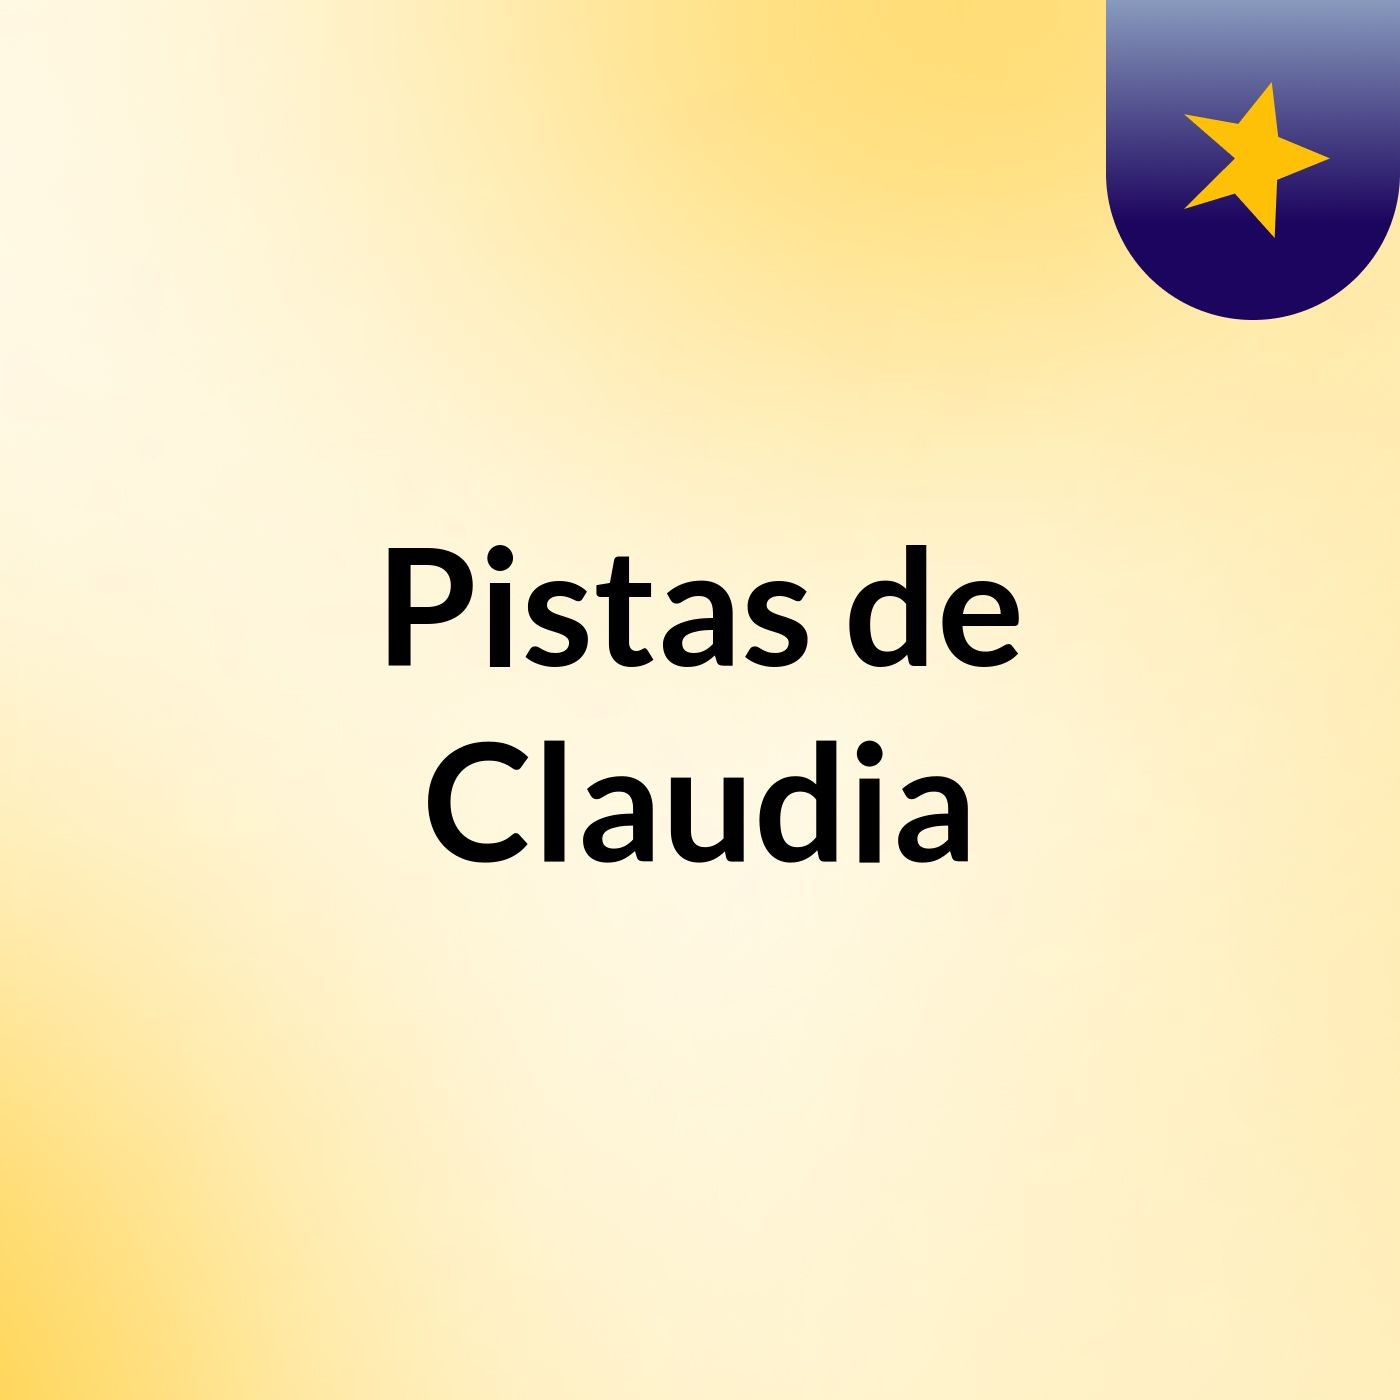 Pistas de Claudia